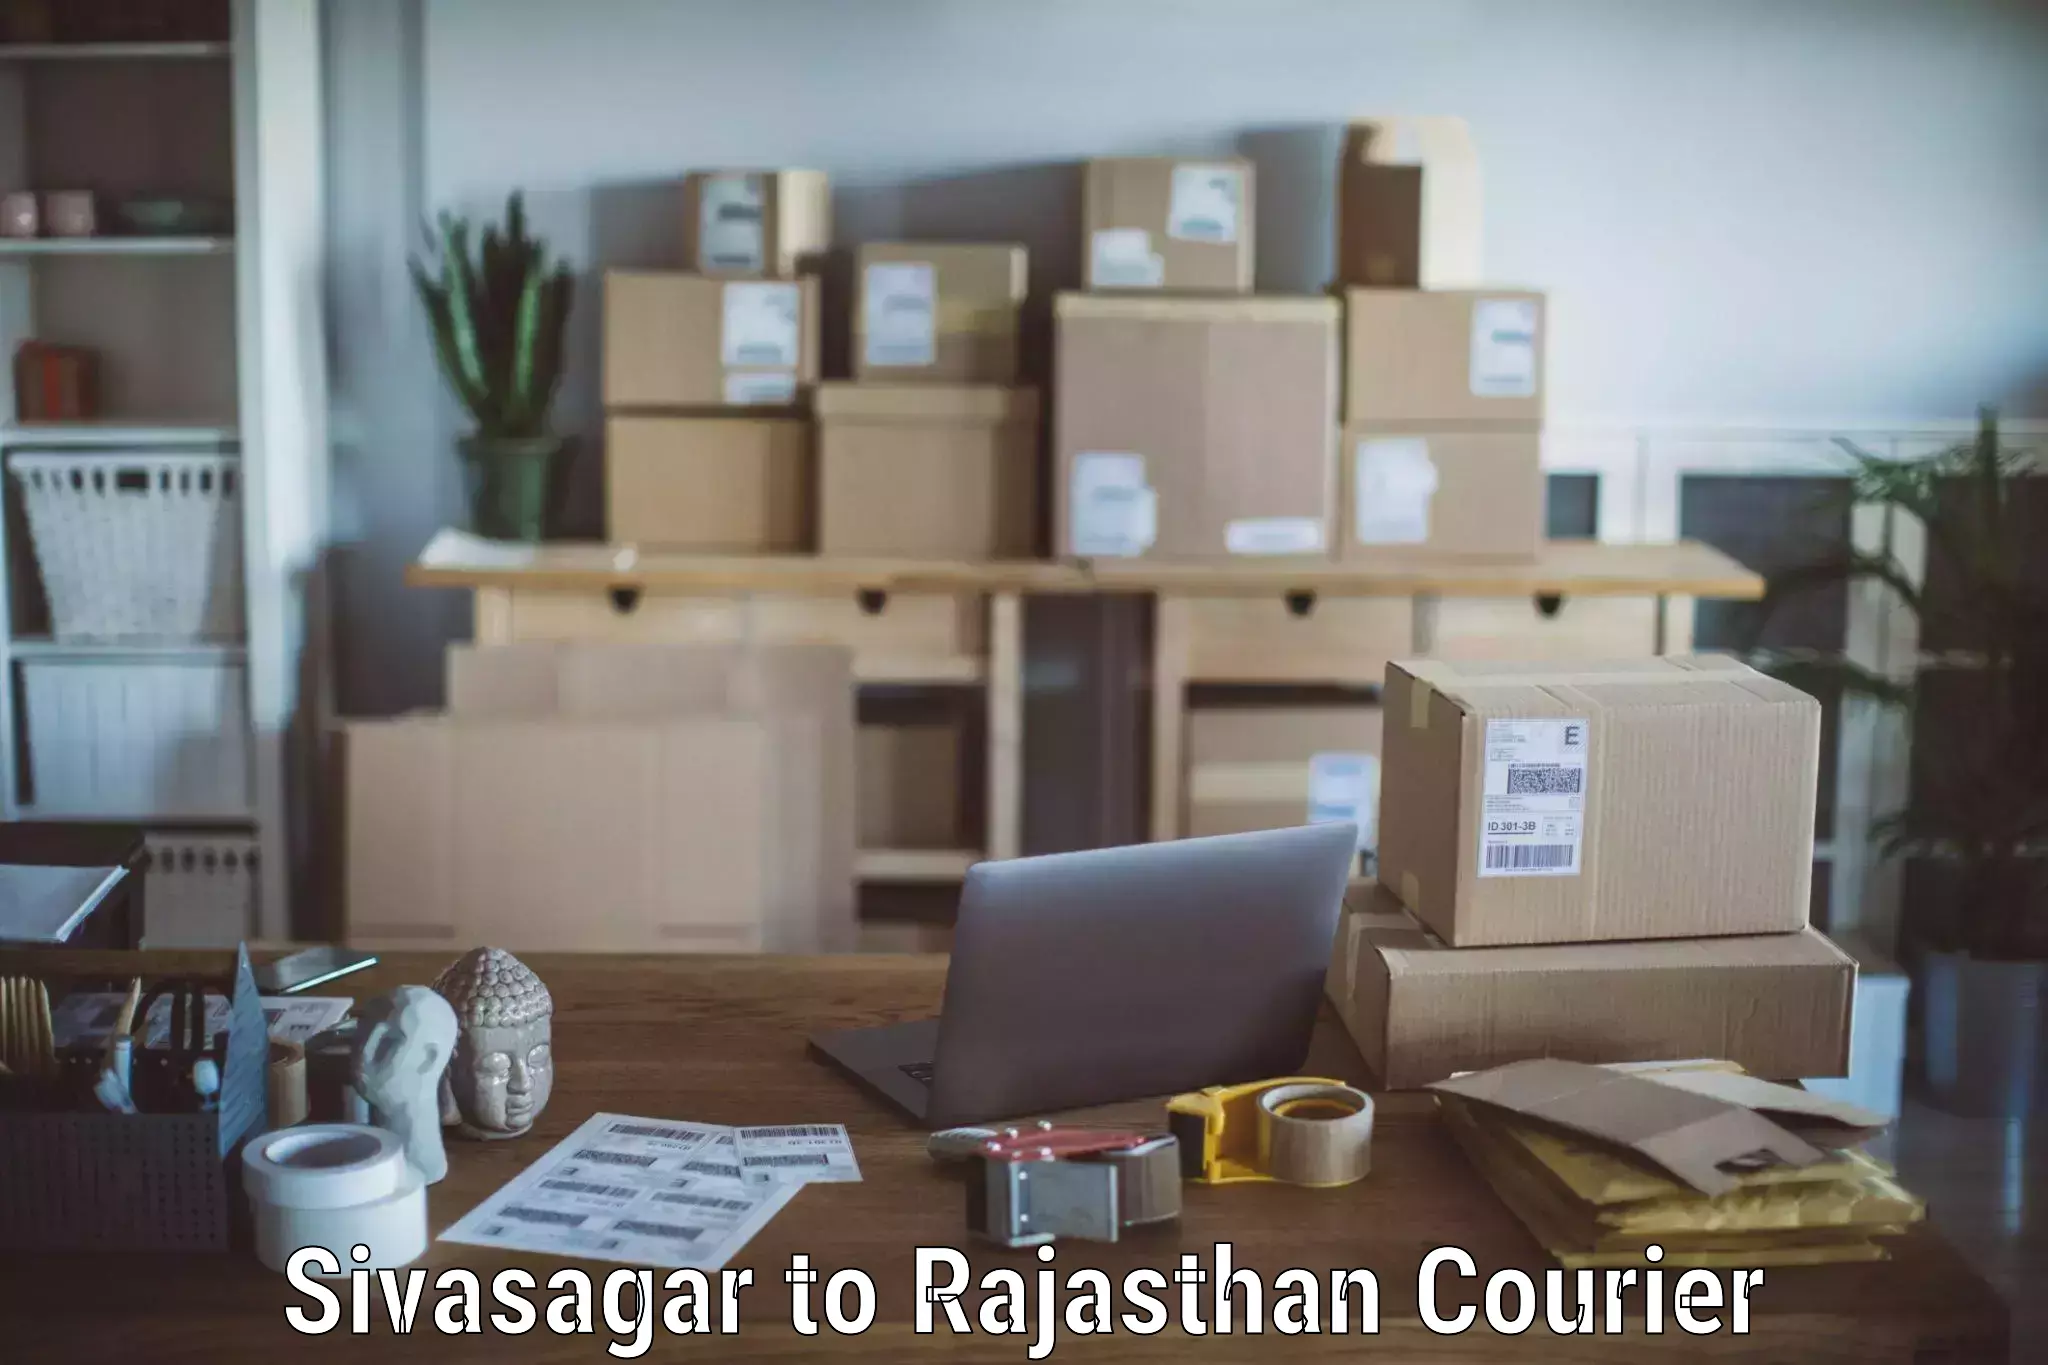 Trusted moving company Sivasagar to Yathalakunta